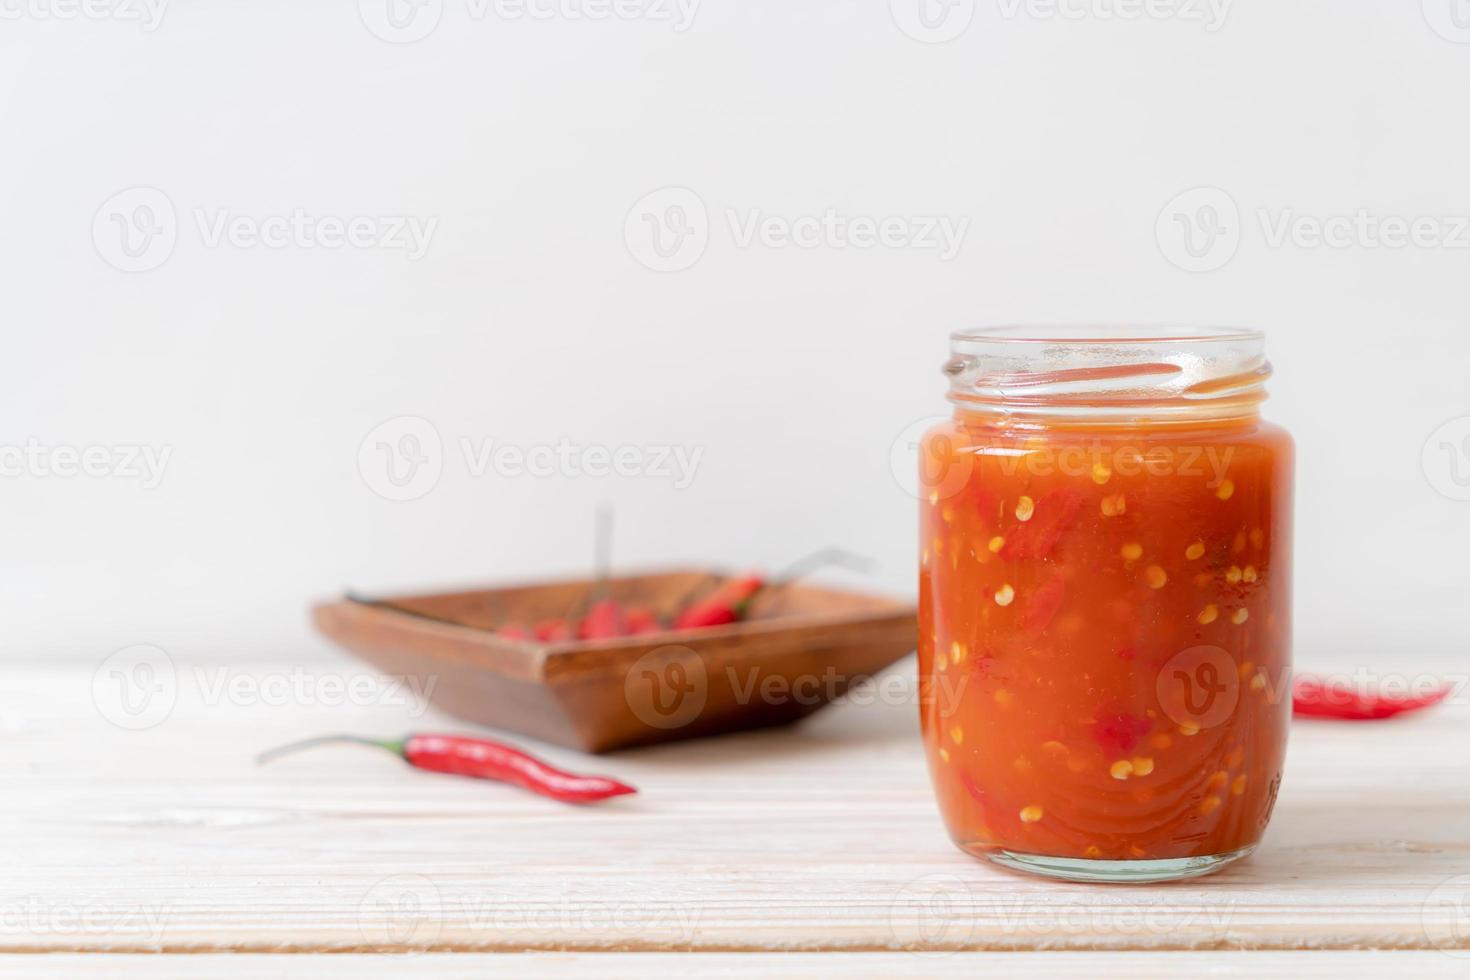 Chili oder Chilisauce in Flasche und Glas auf Holzhintergrund on foto